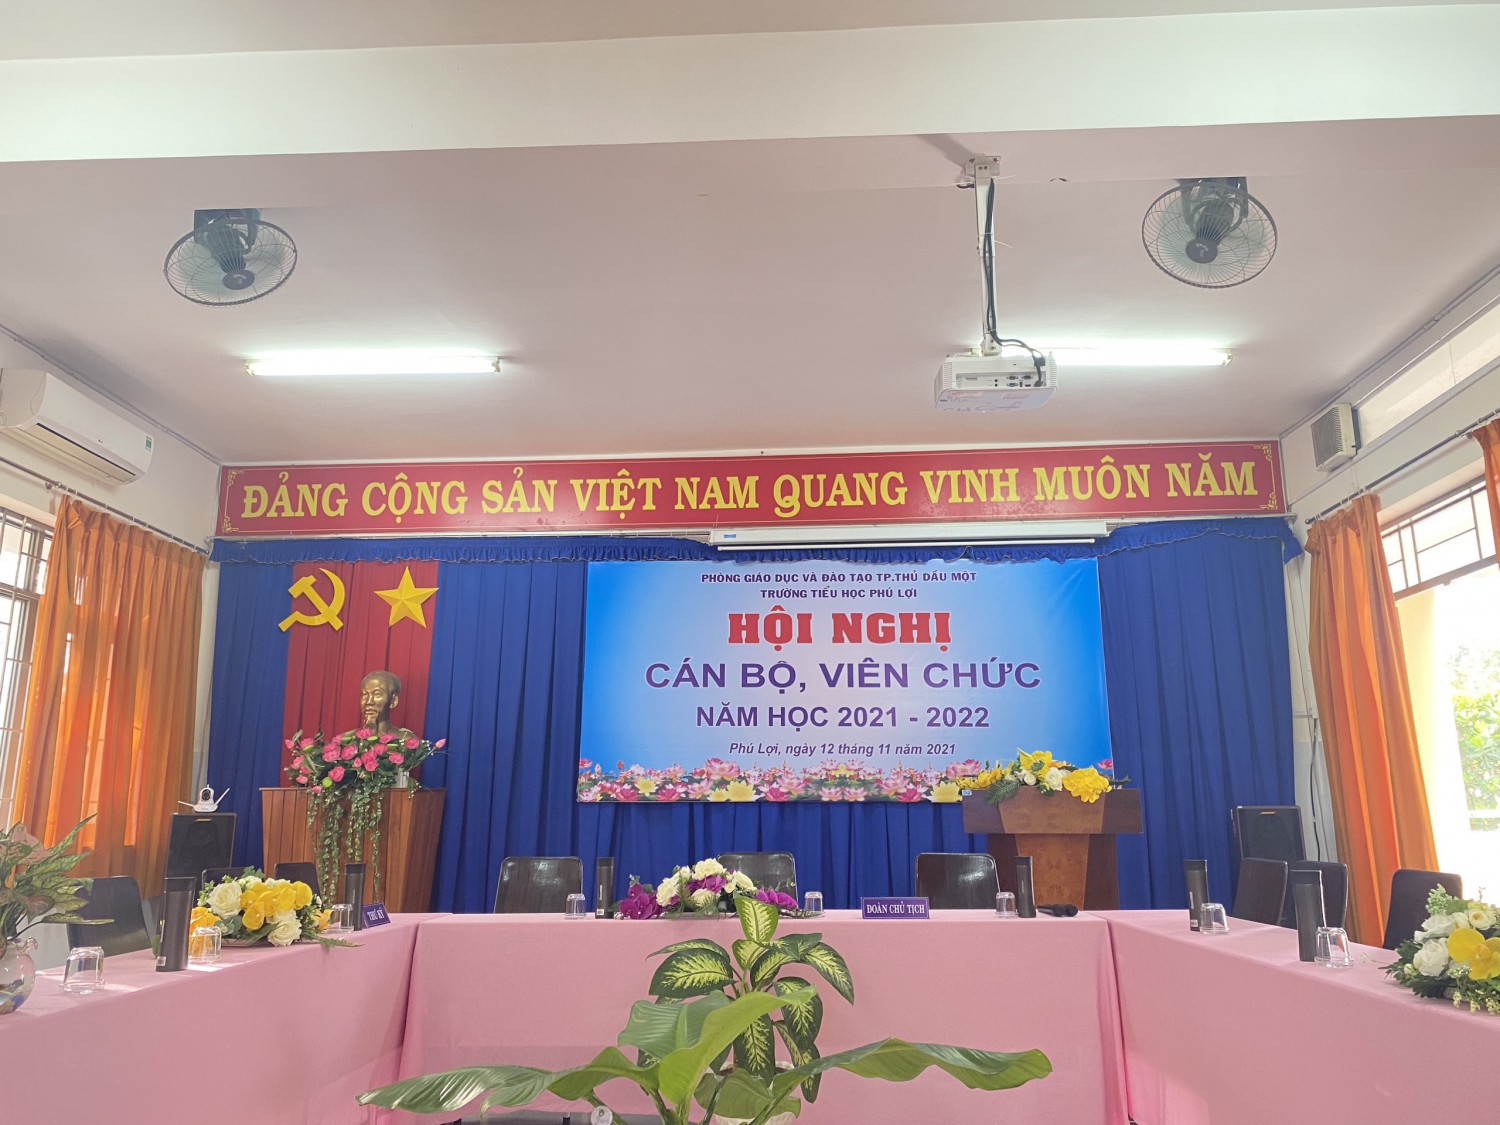 Trường Tiểu học Phú Lợi tổ chức Hội nghị CBVC năm học 2021 - 2022